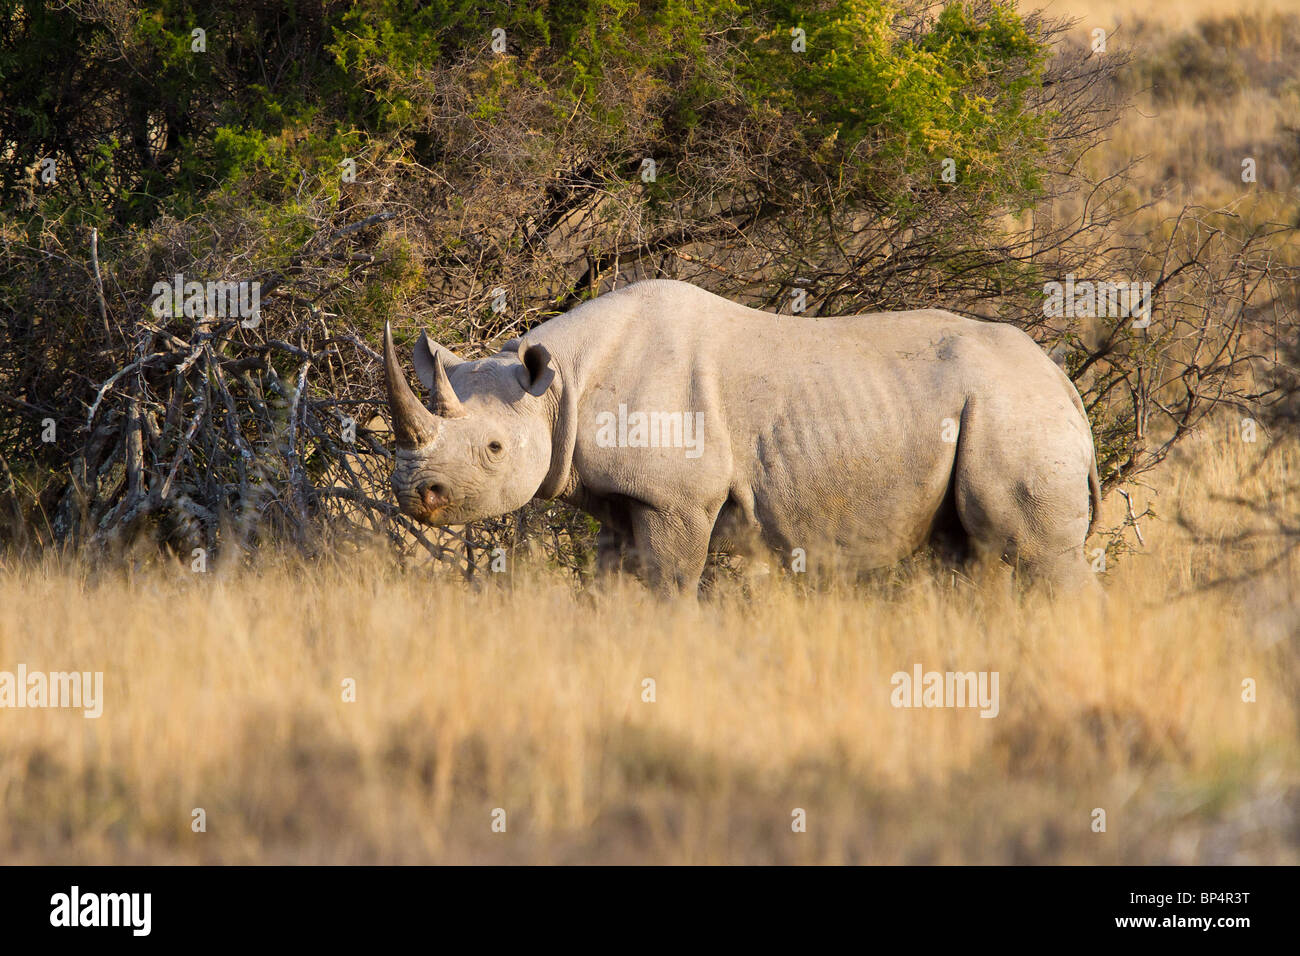 Highly endangered Black Rhino female in the Karoo veld in Africa Stock Photo